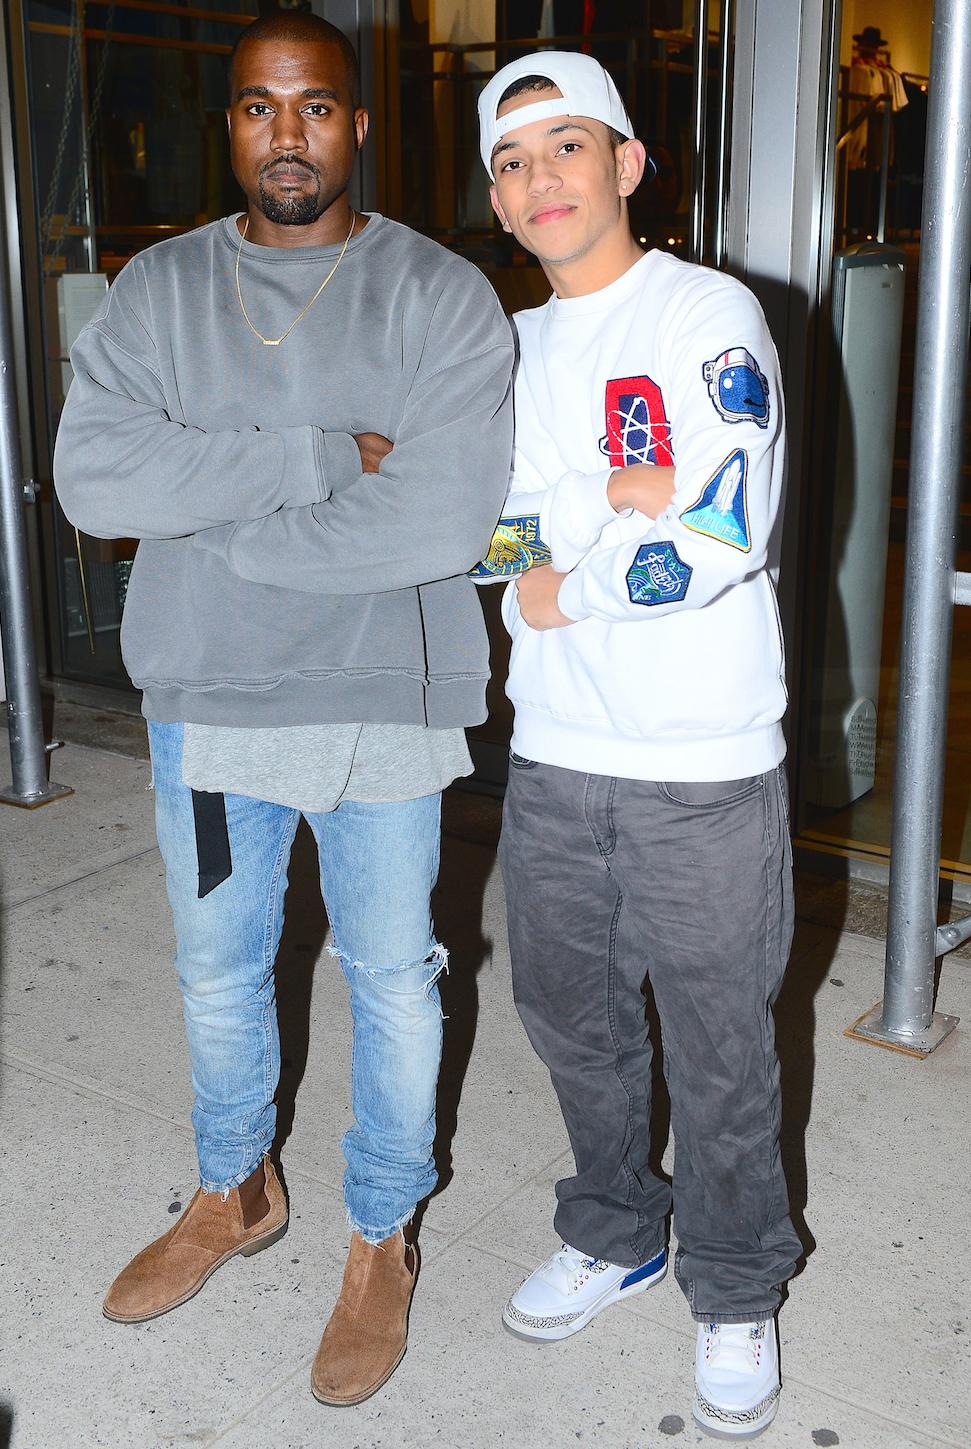 Kanye West: Snakeskin Backpack in NYC: Photo 2596231, Kanye West Photos